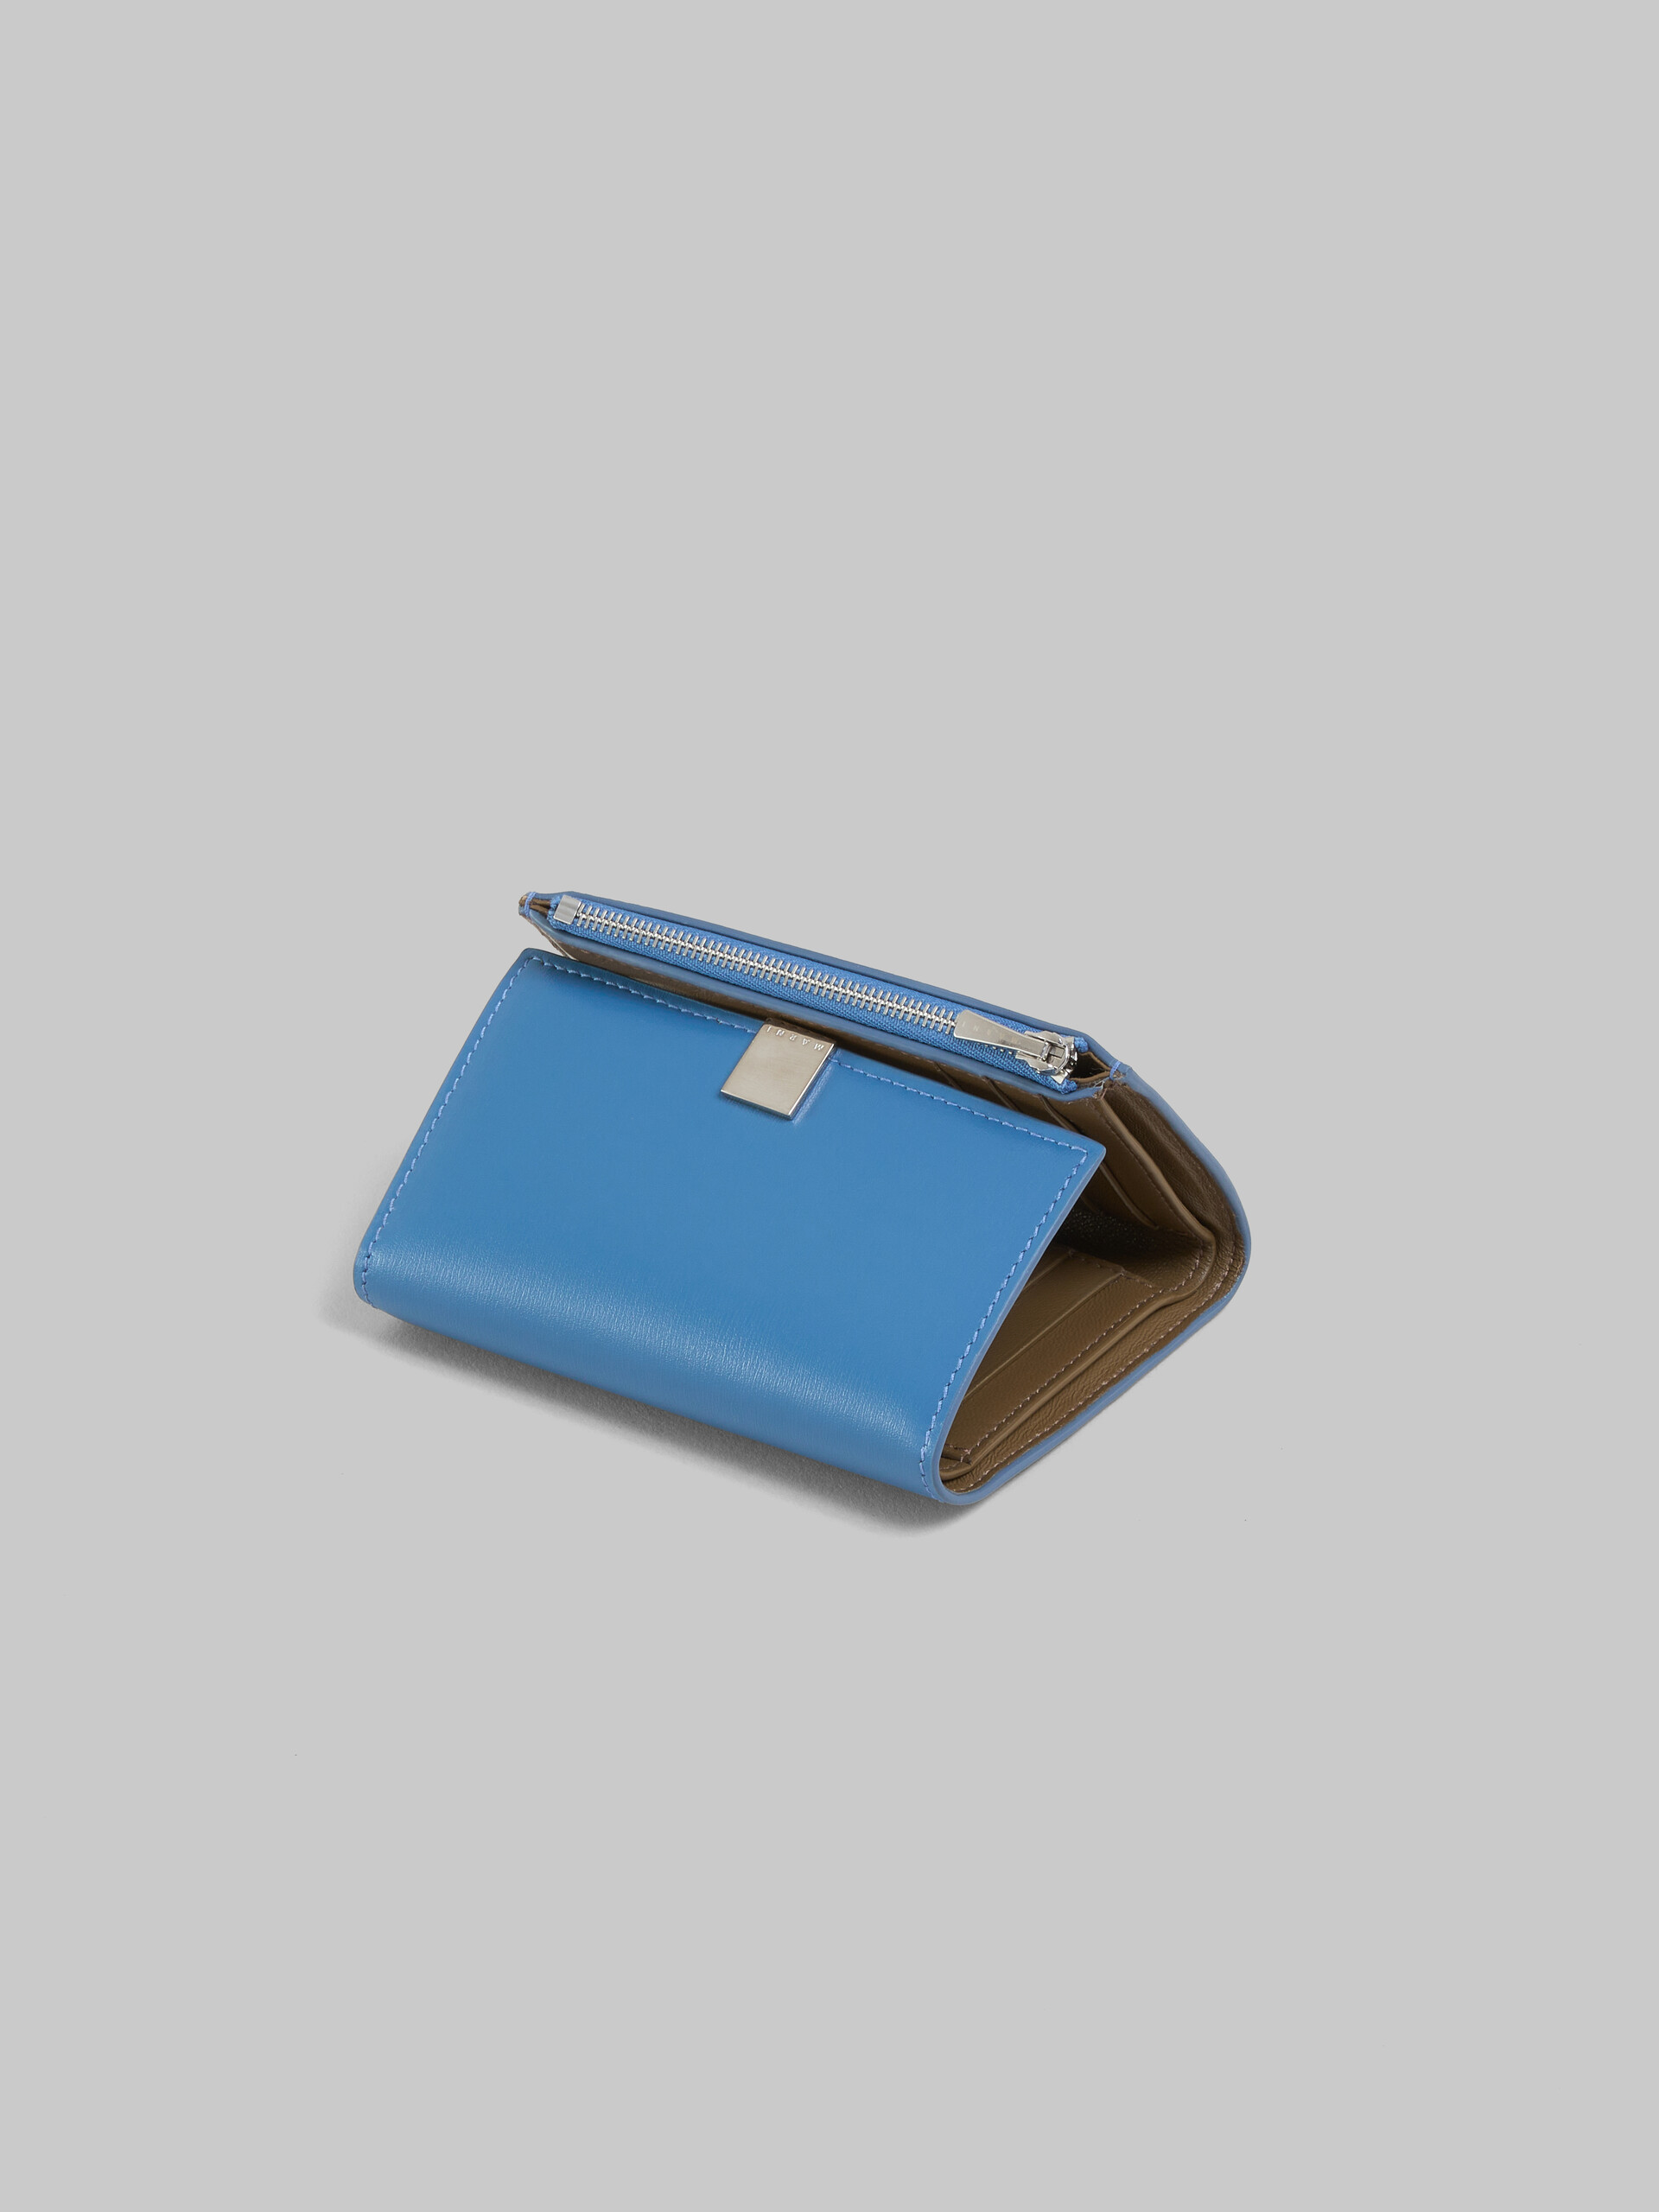 ブラック レザー製 Prisma 三つ折りウォレット、メタルプレート付き - 財布 - Image 4